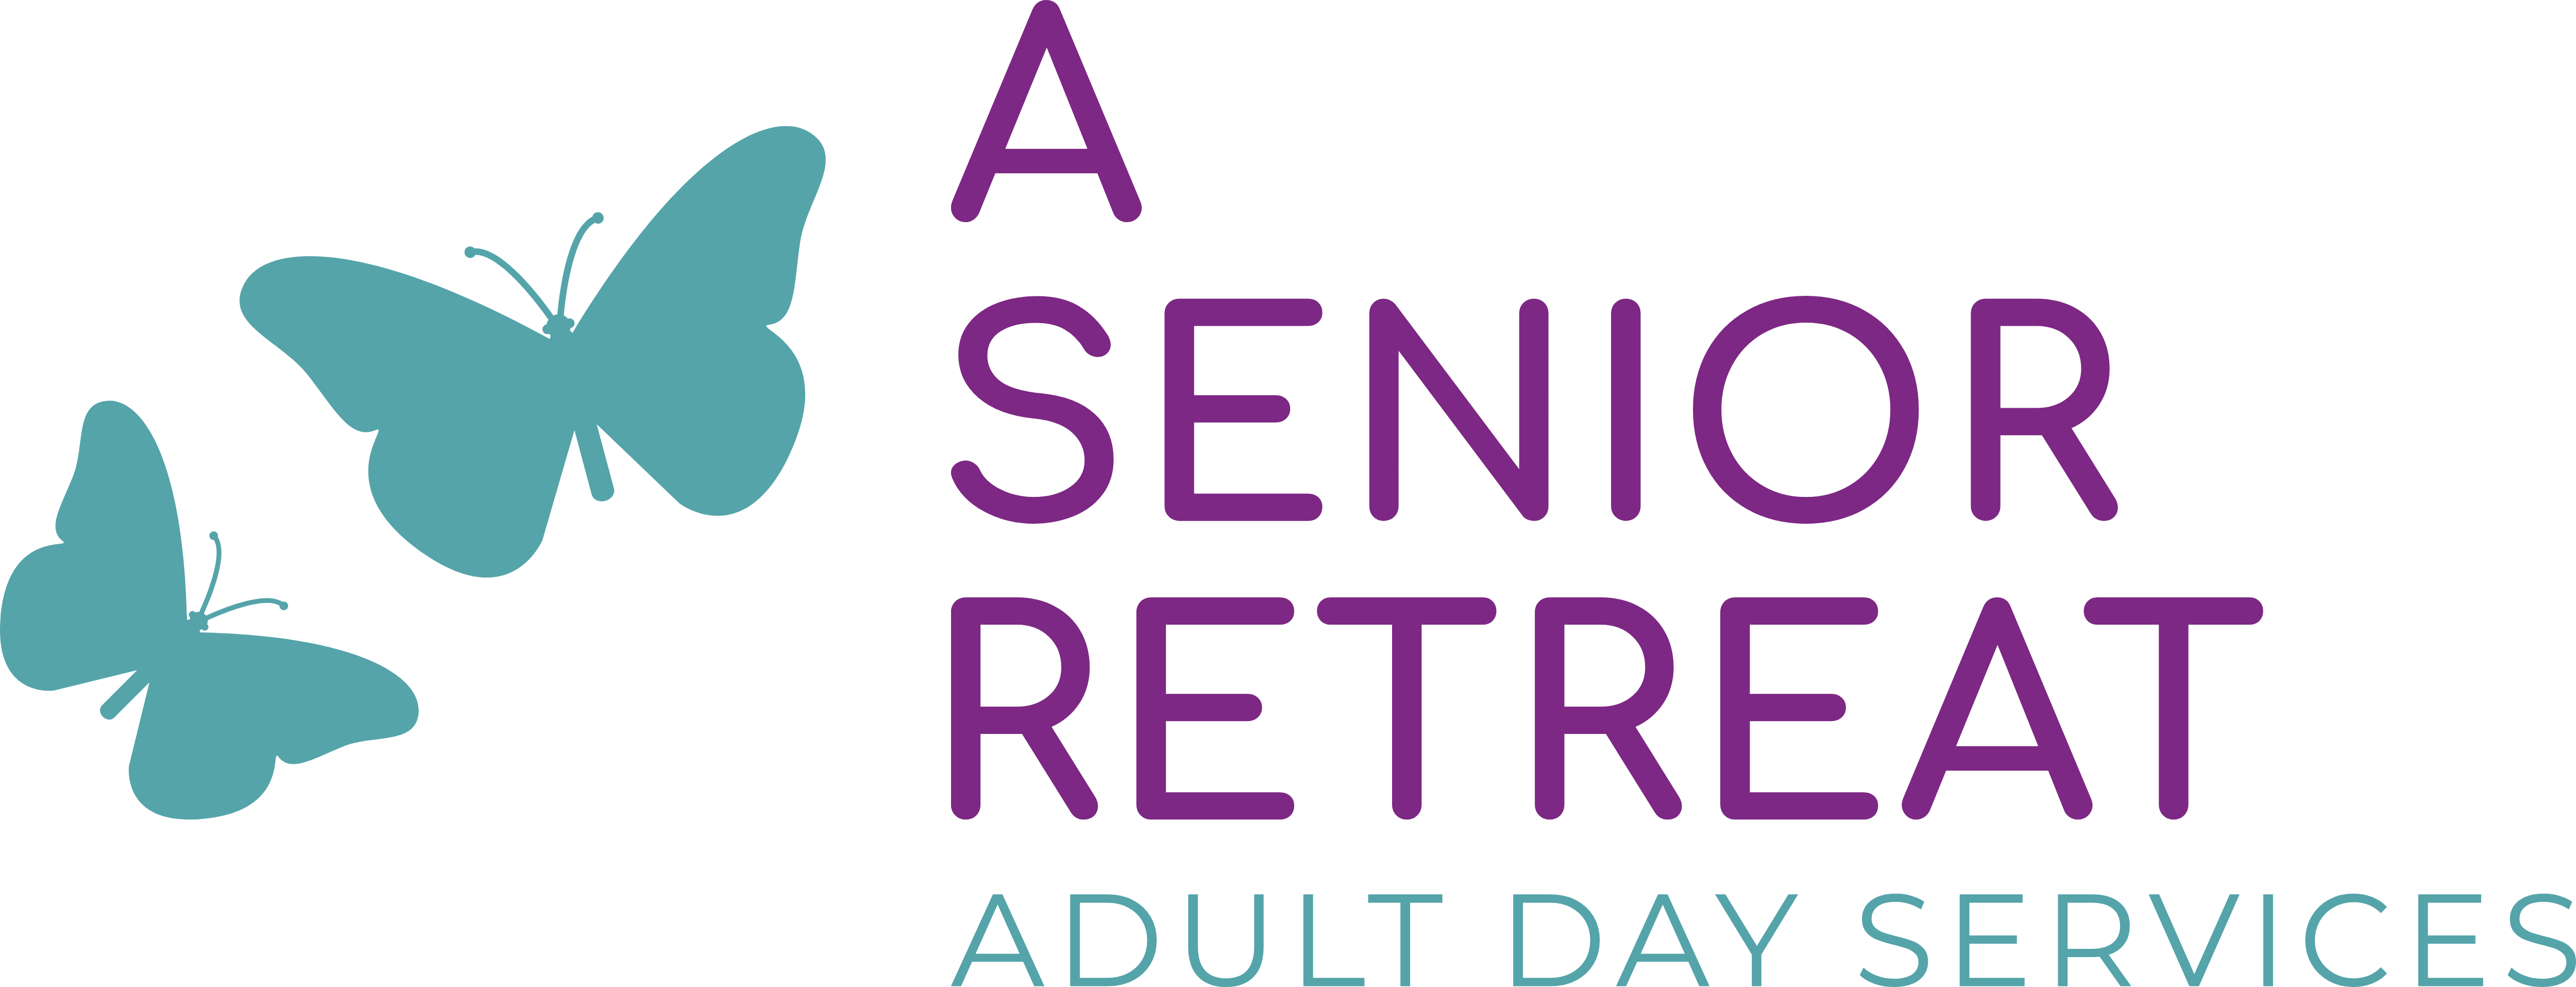 A Senior Retreat